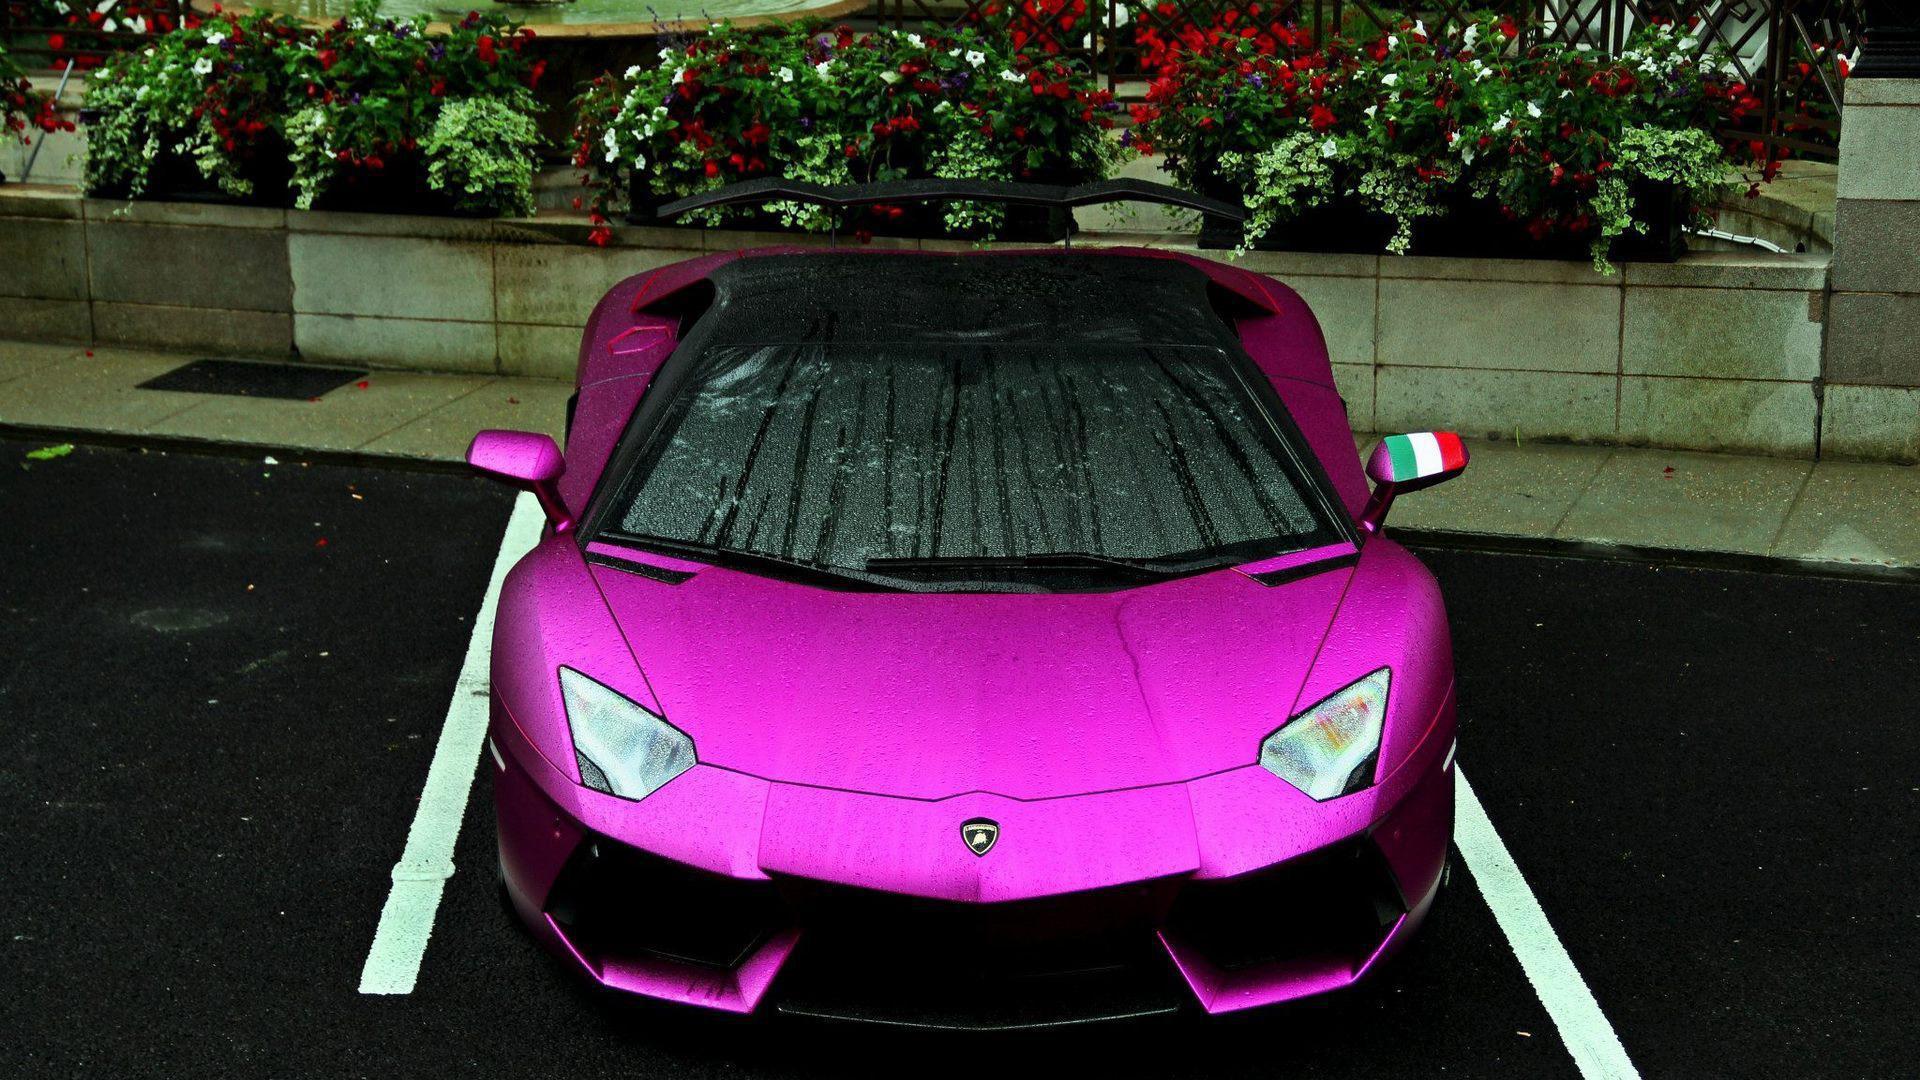 Purple Lamborghini Wallpaper Image Photo Picture Background